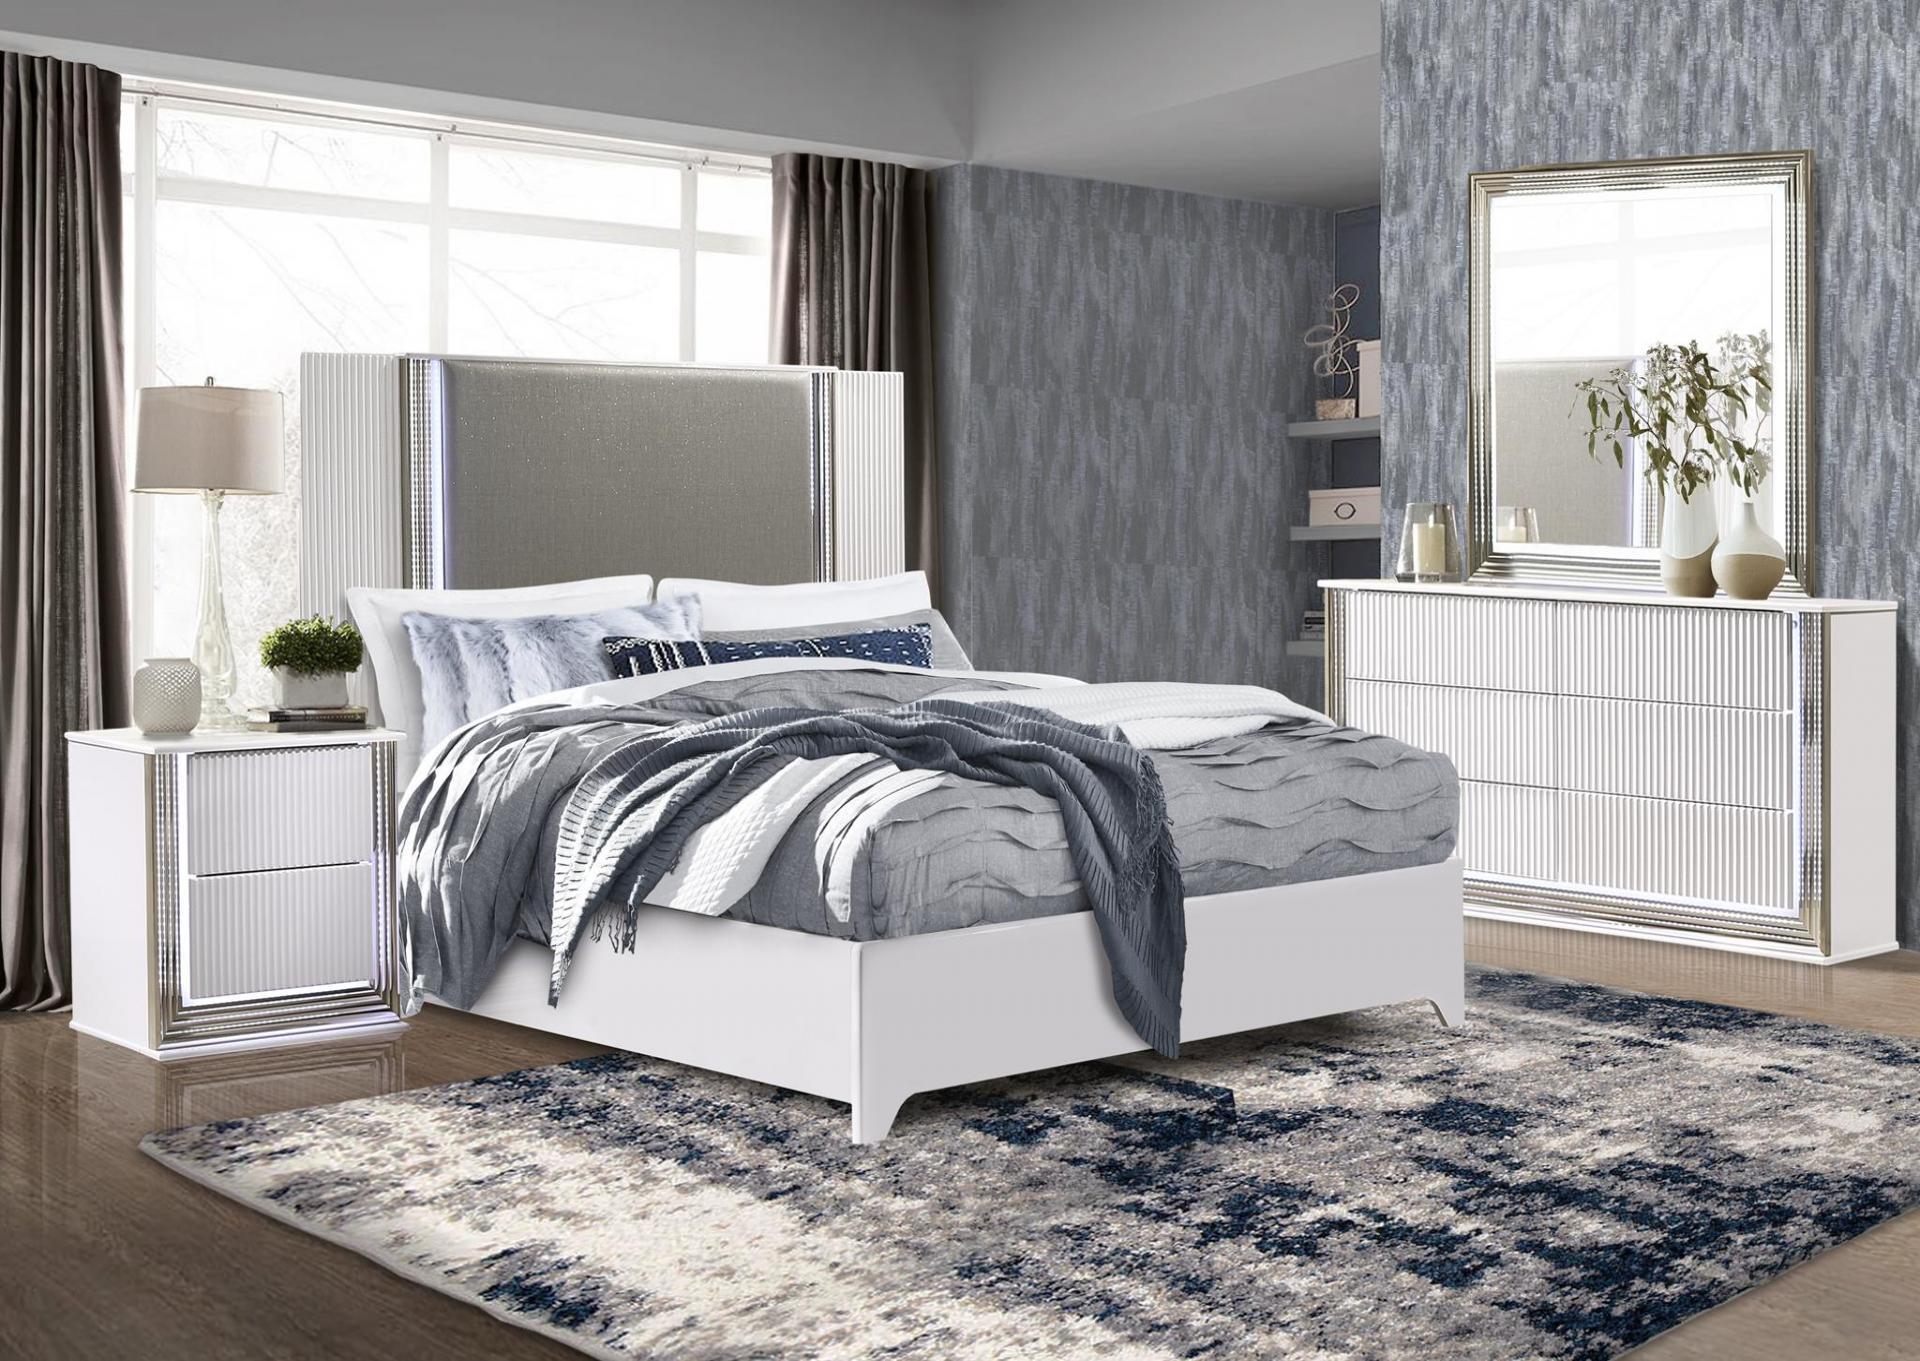 Global Aspen queen bedroom set/ white/ 4 pc,Store Brand